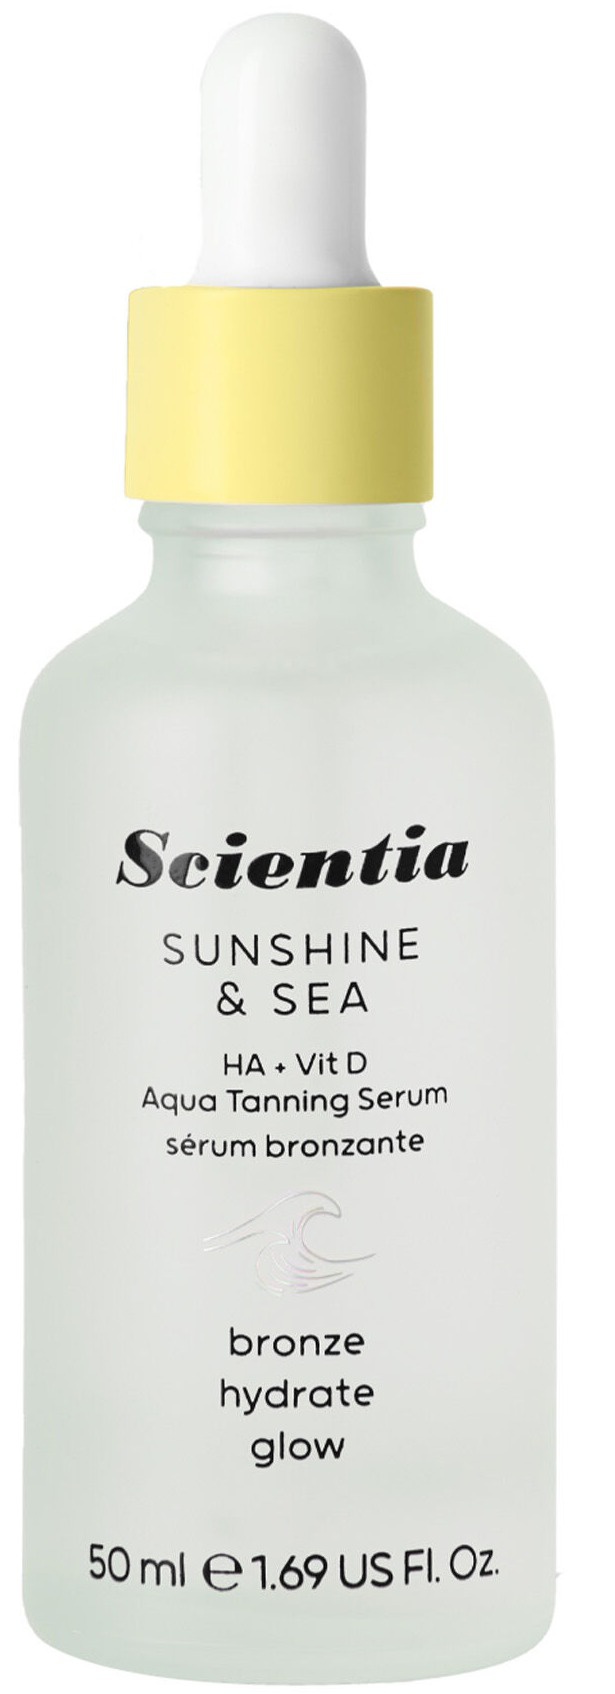 Scientia Sunshine & Sea Ha + Vit D Aqua Tanning Serum